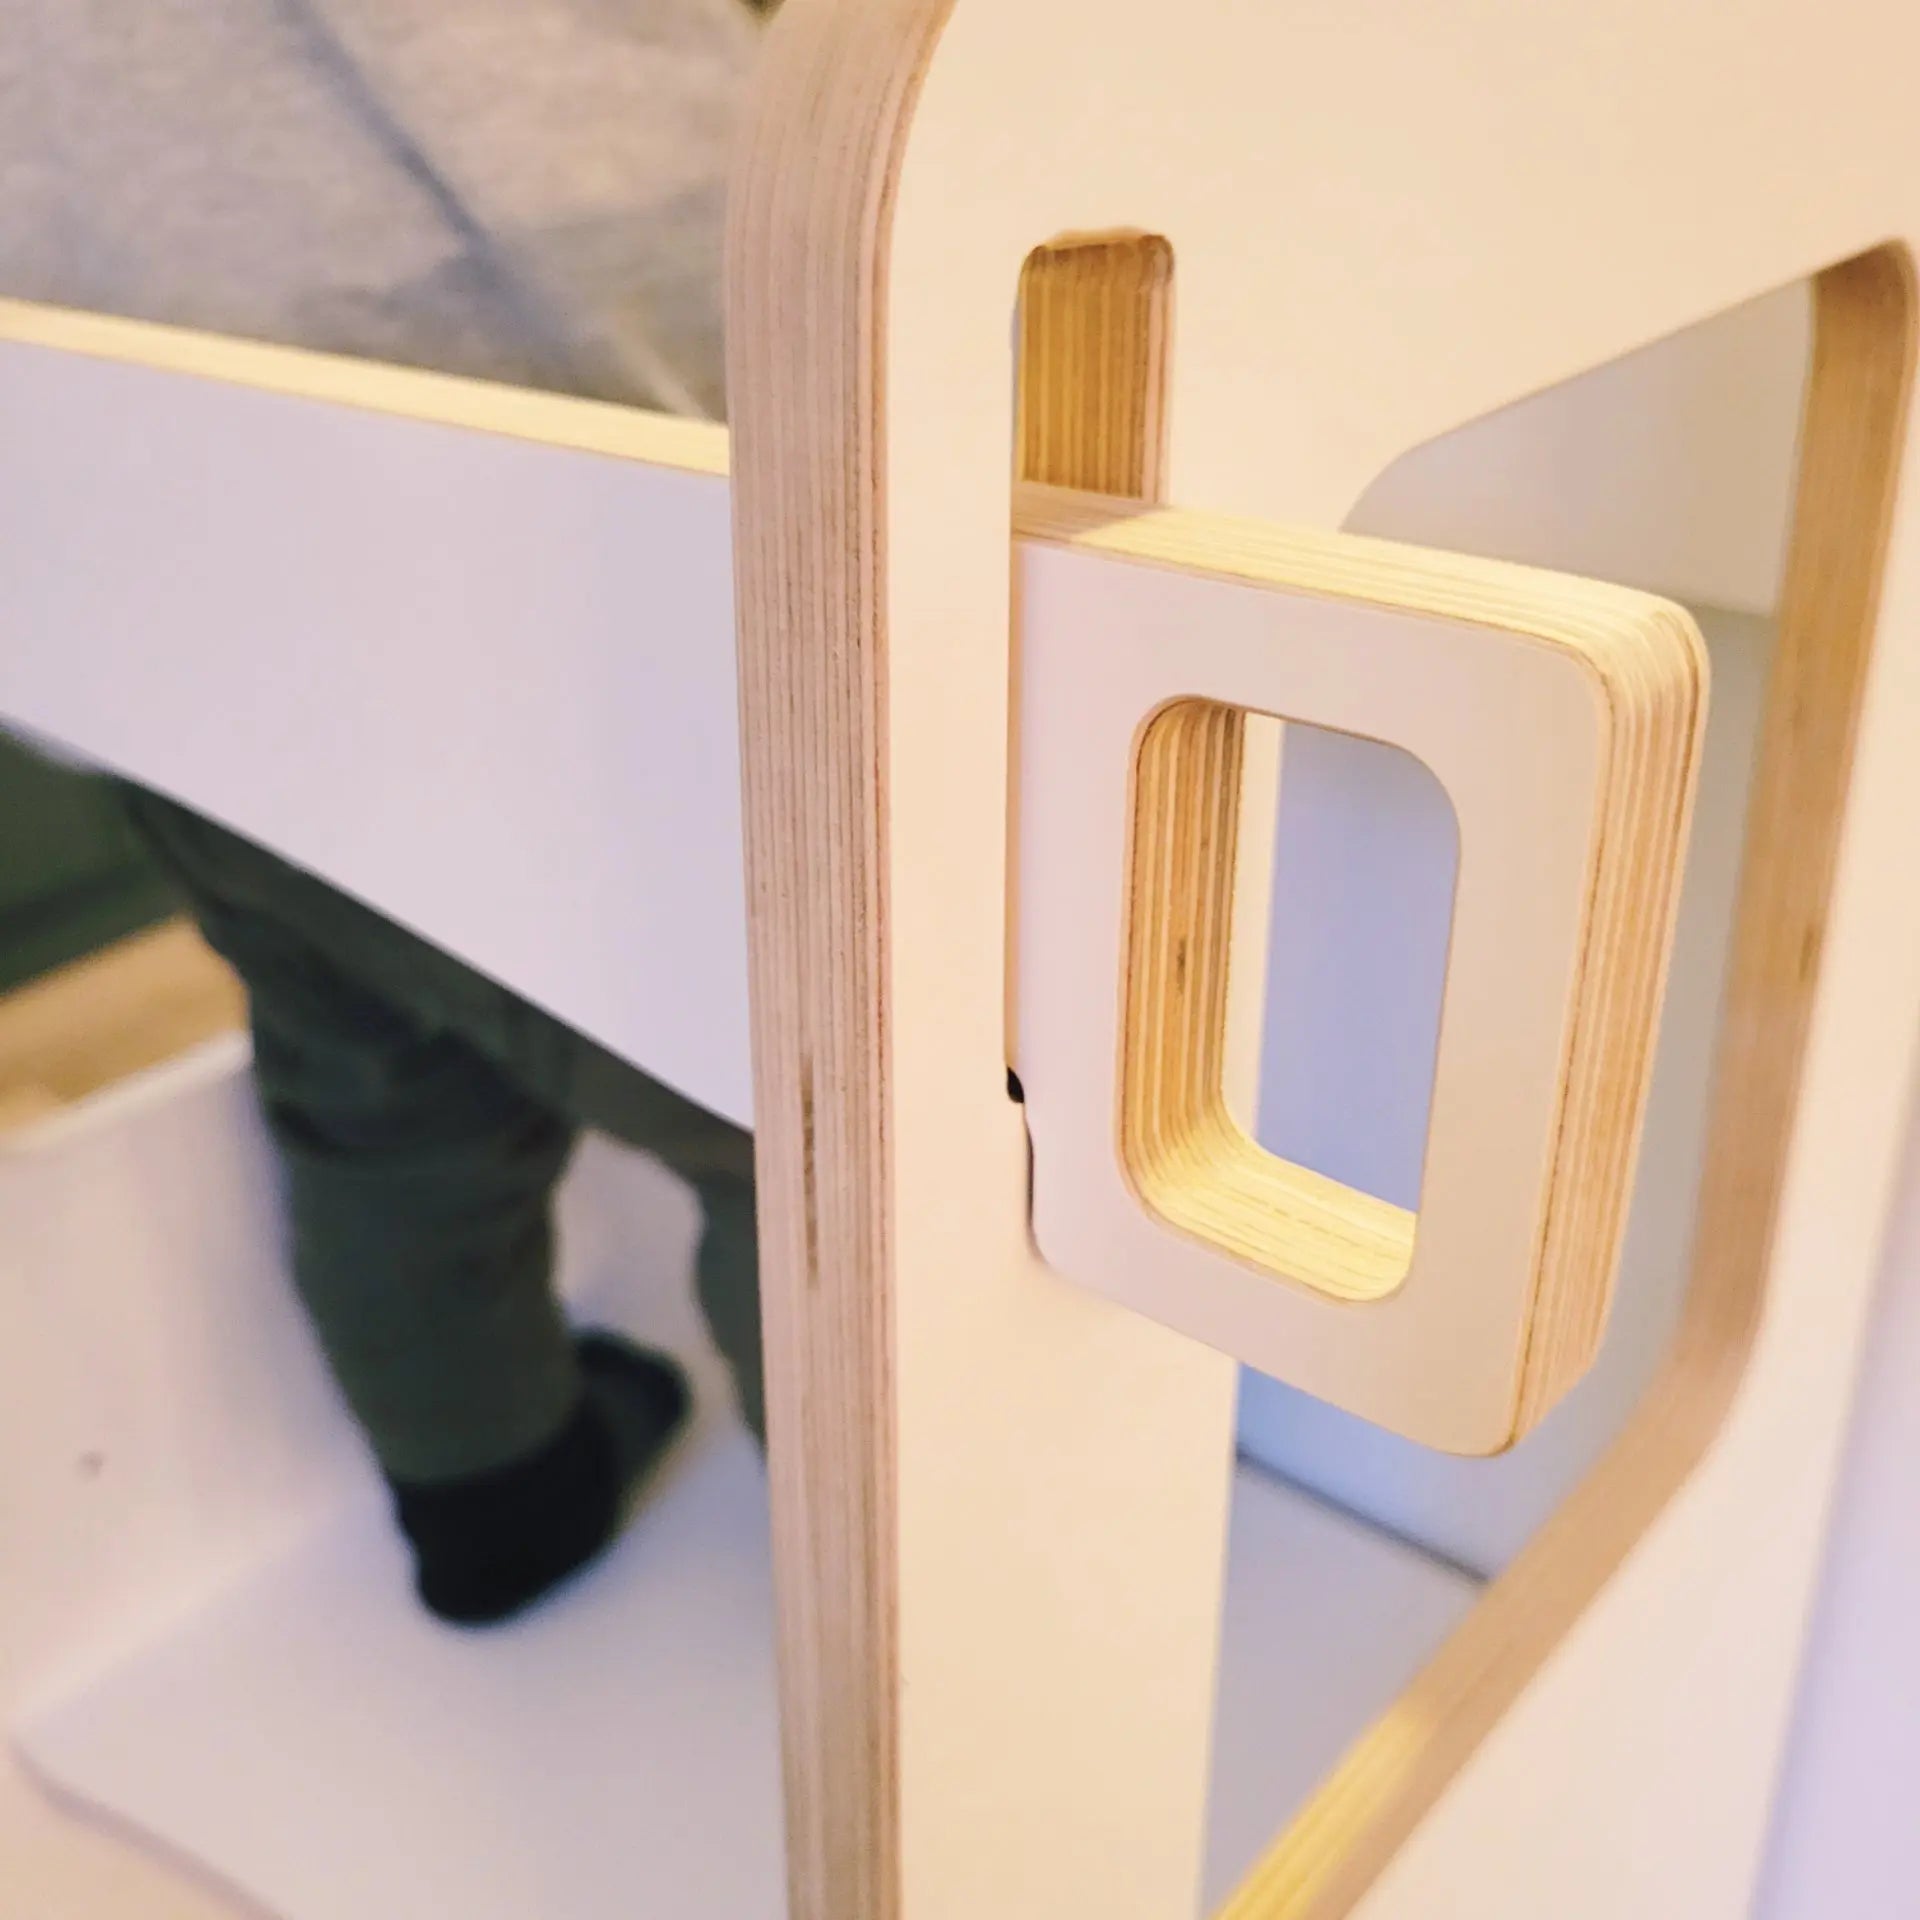 Tour d'apprentissage - Blanc Bois Concept SC | Woodworking and furniture